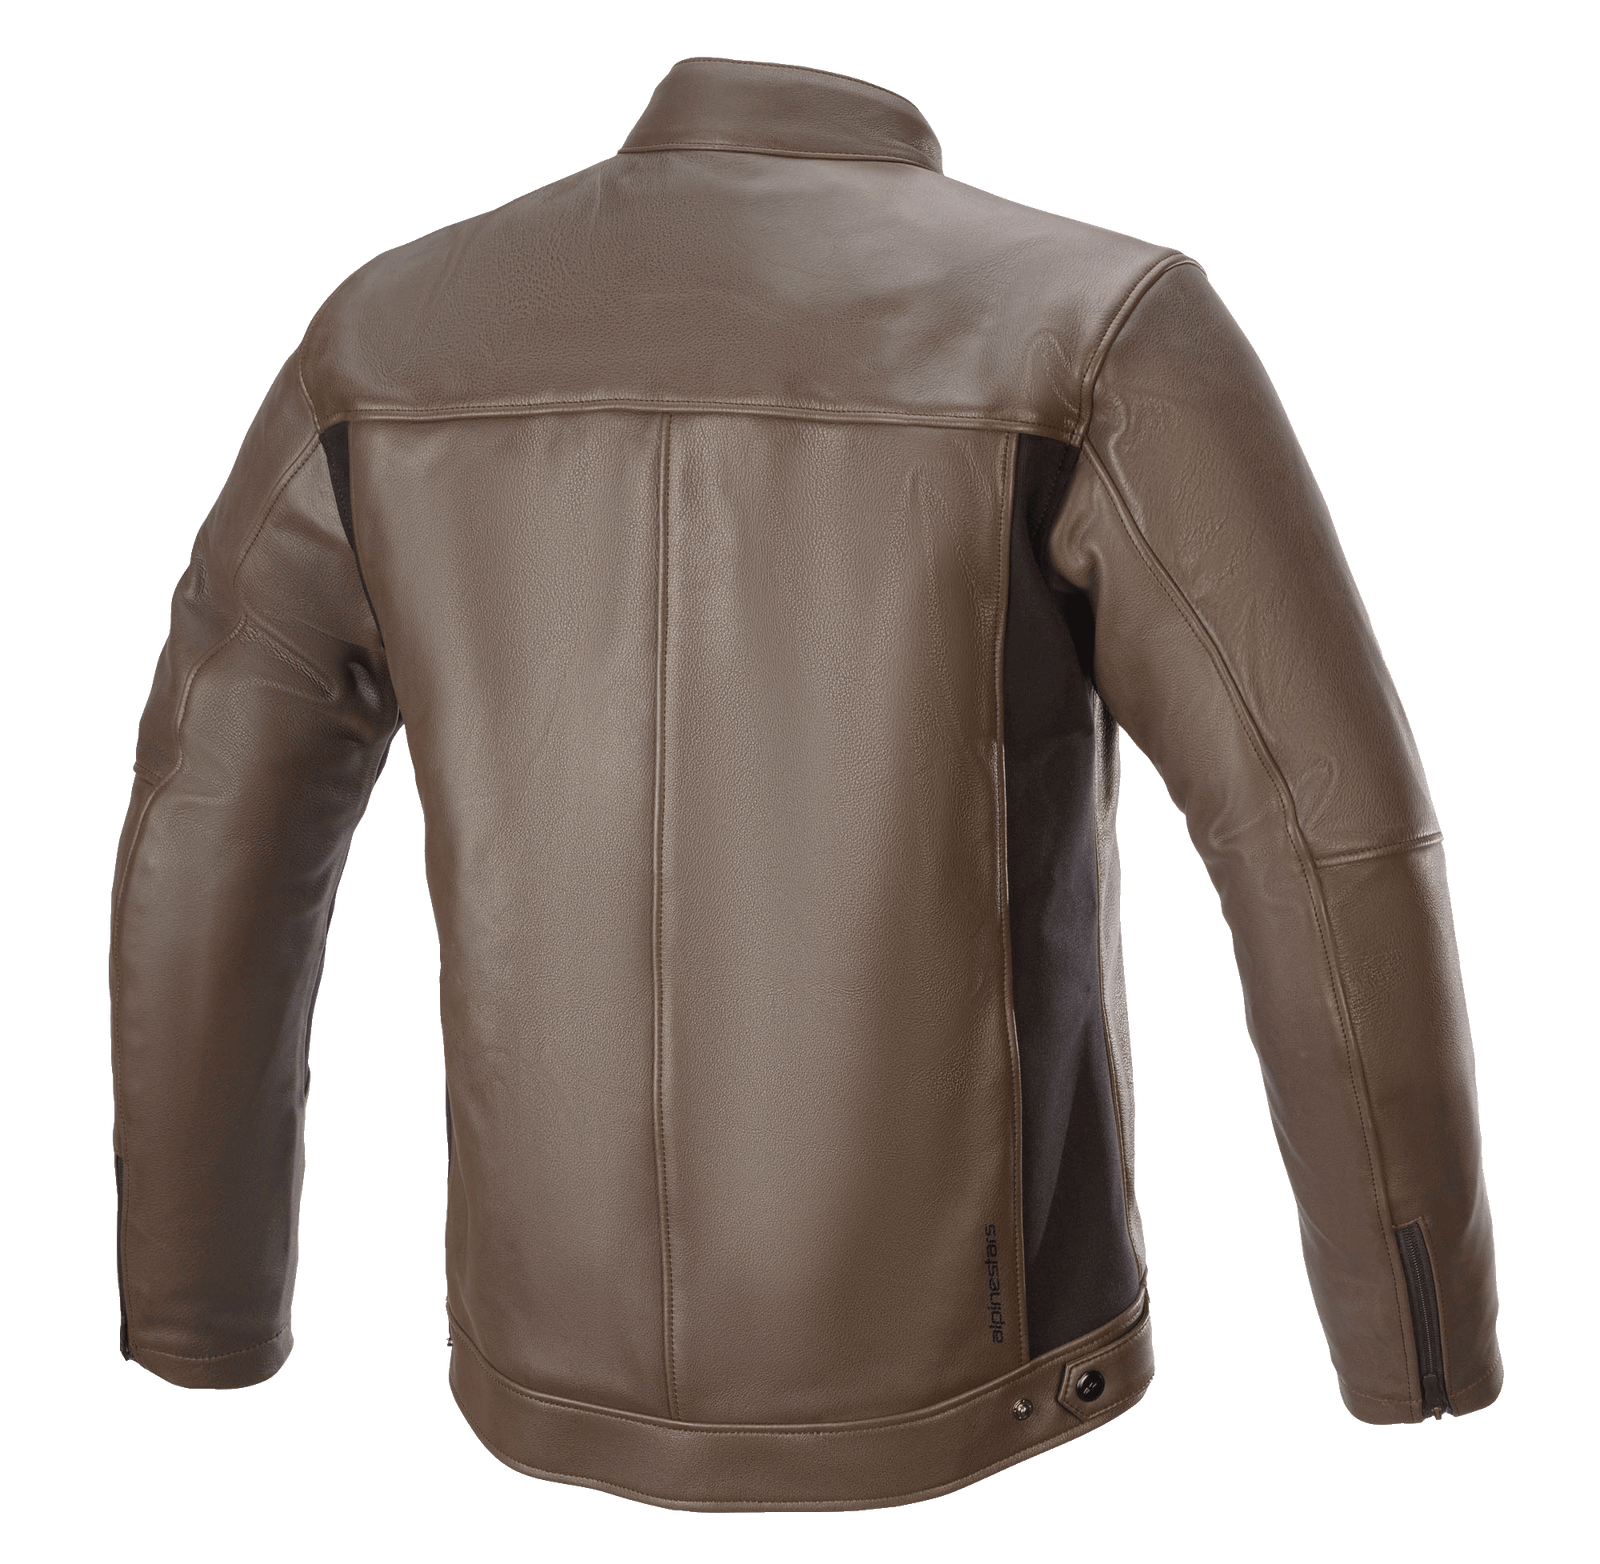 Topanga Leather Jacket